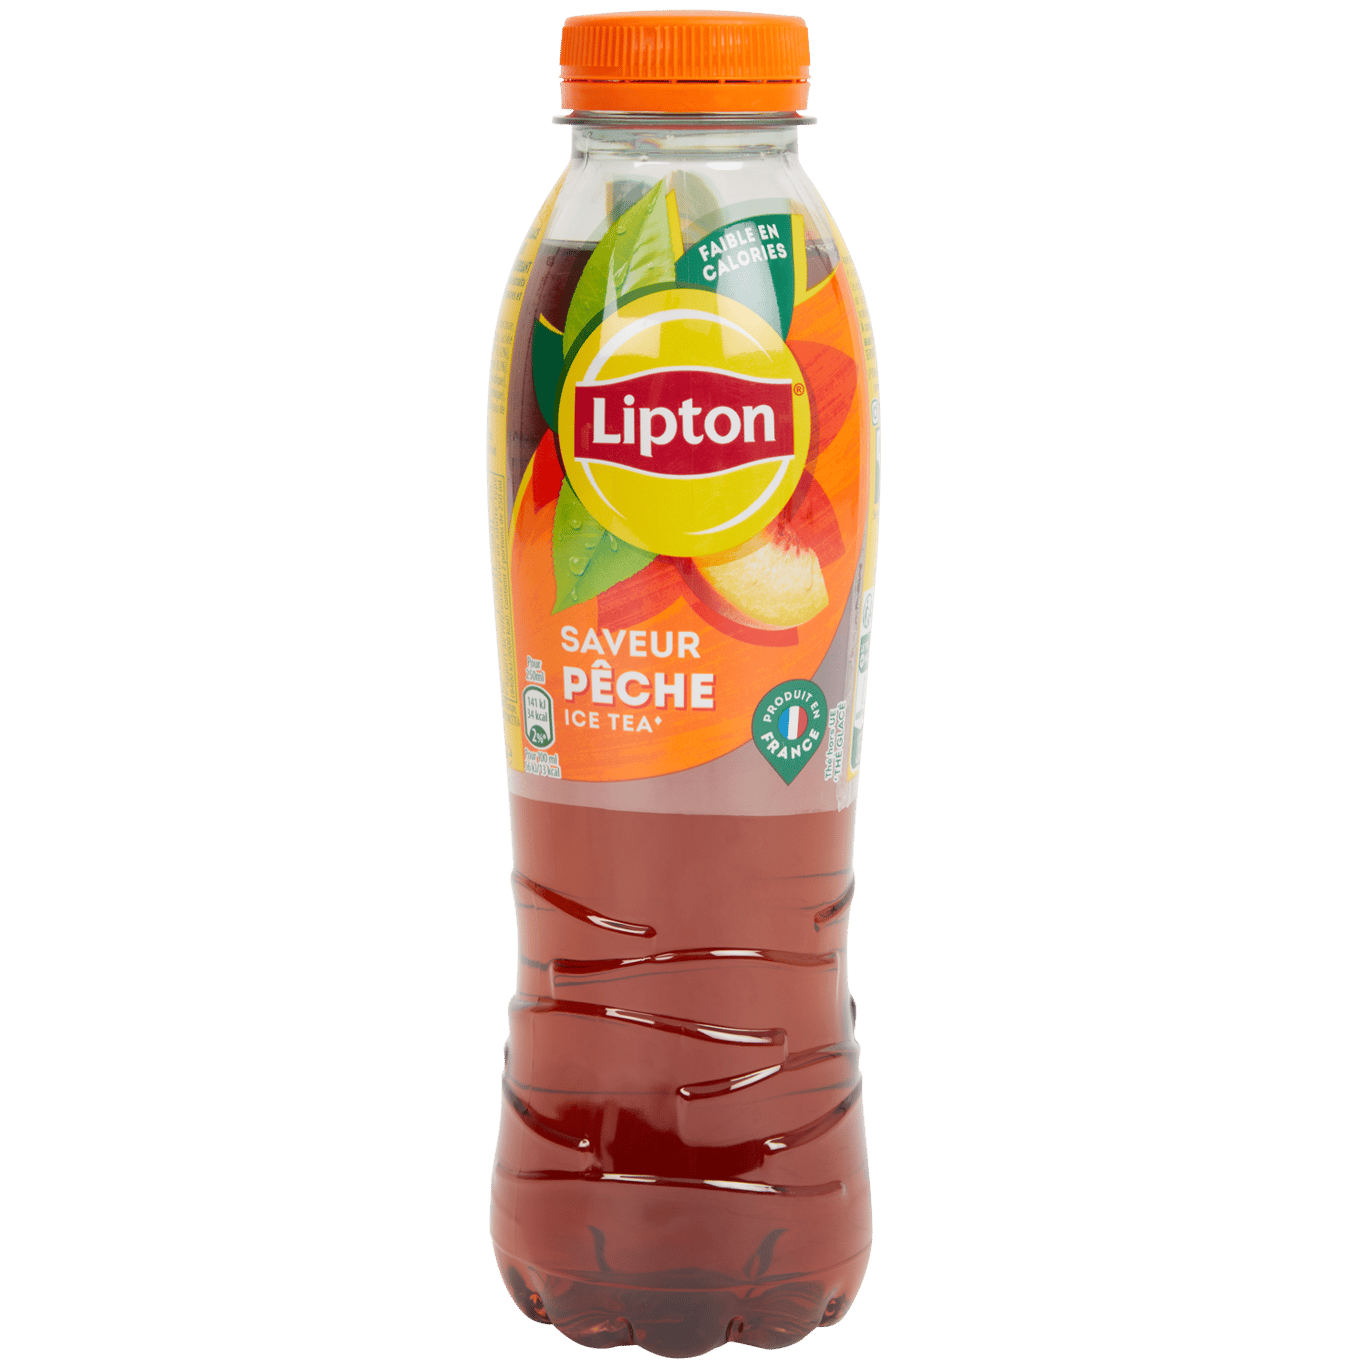 Lipton Ice Tea Peach